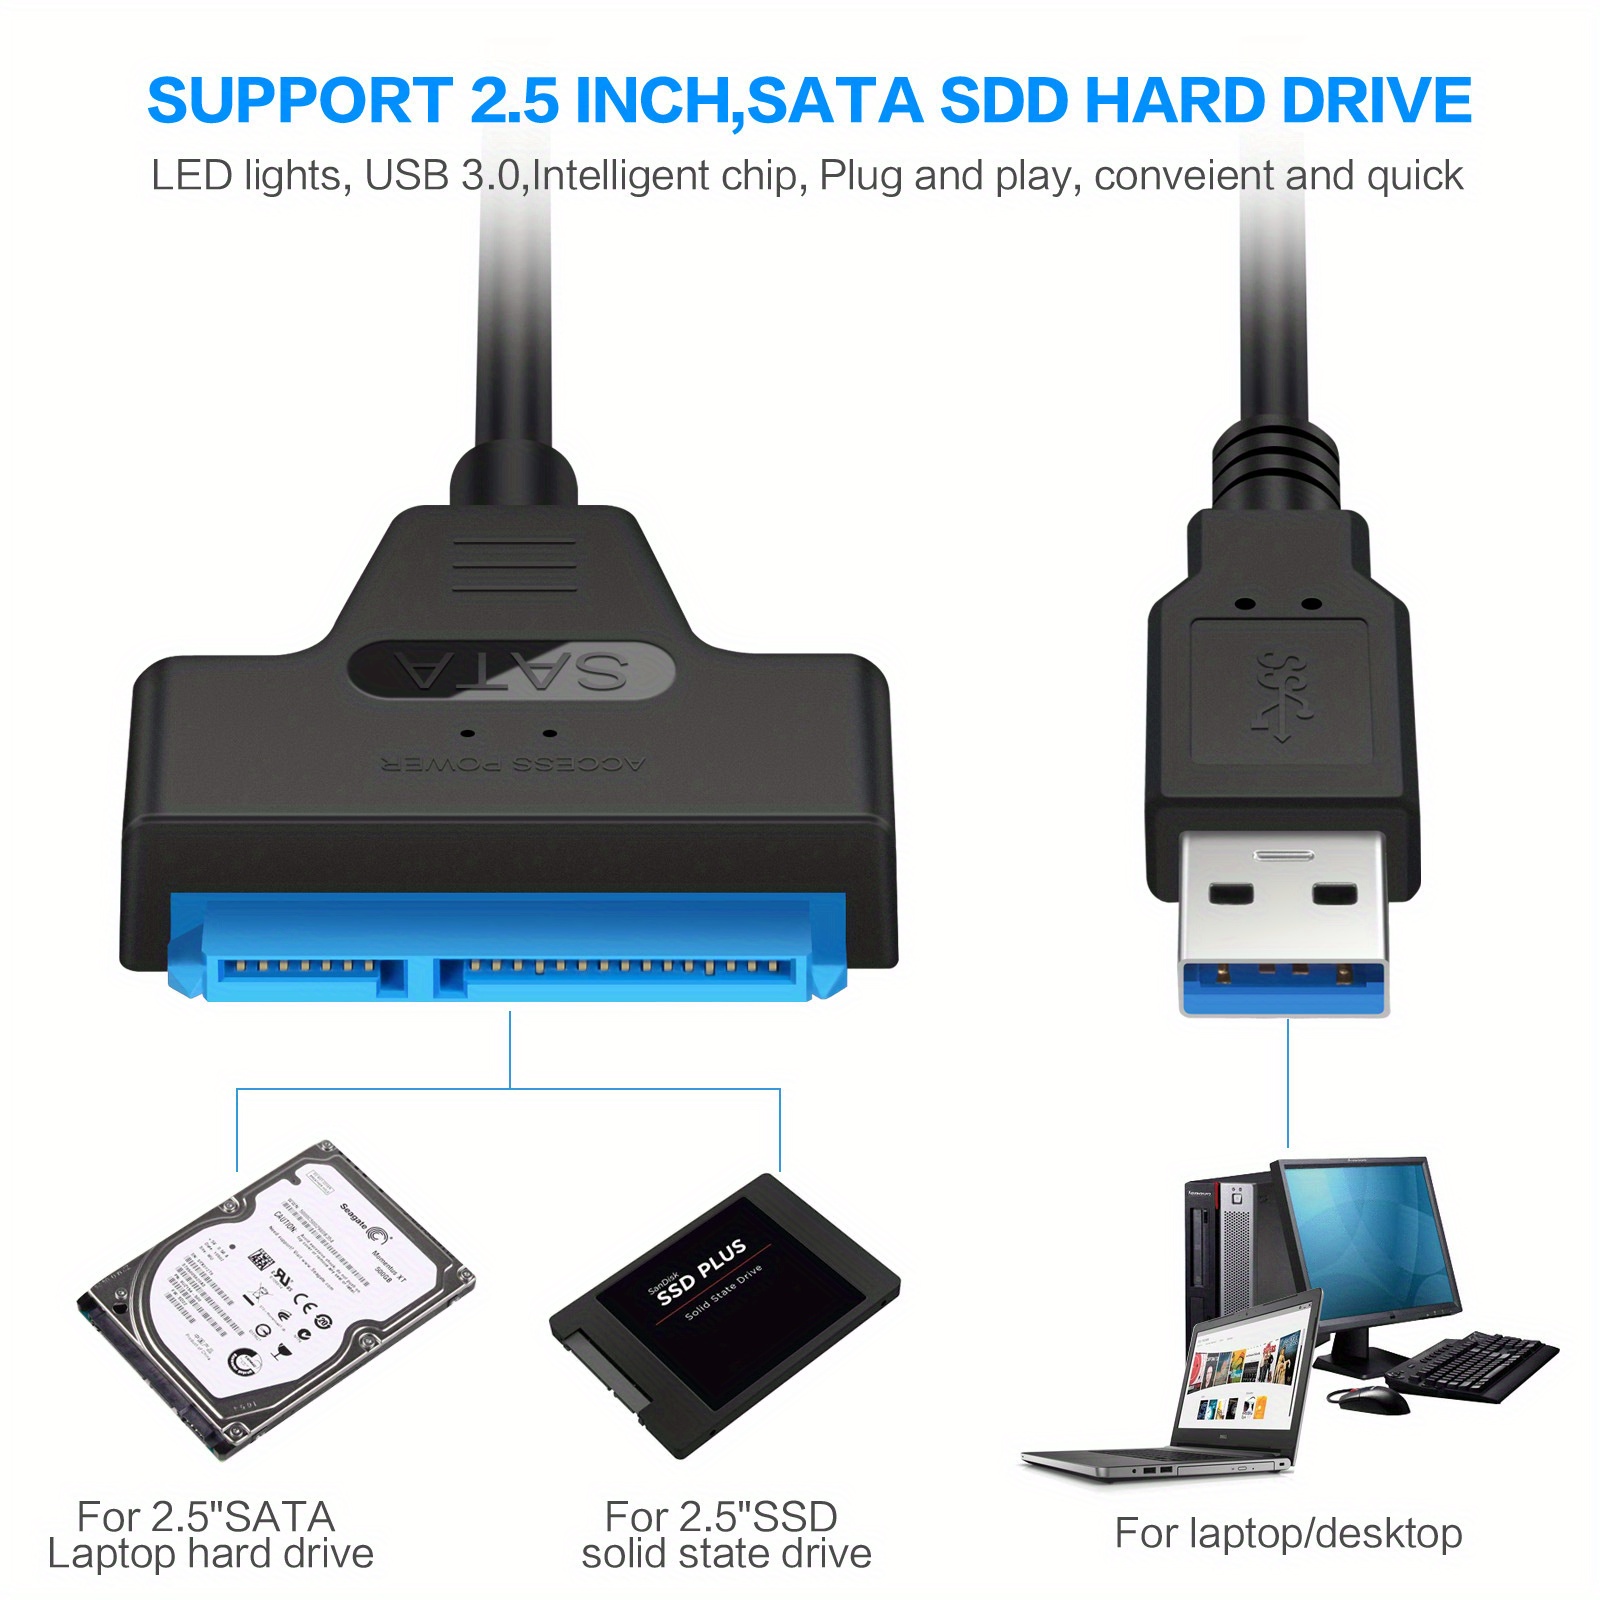 USB 3.0 to SATA 22 Pin 2.5 Hard Disk Drive Converter Adapter